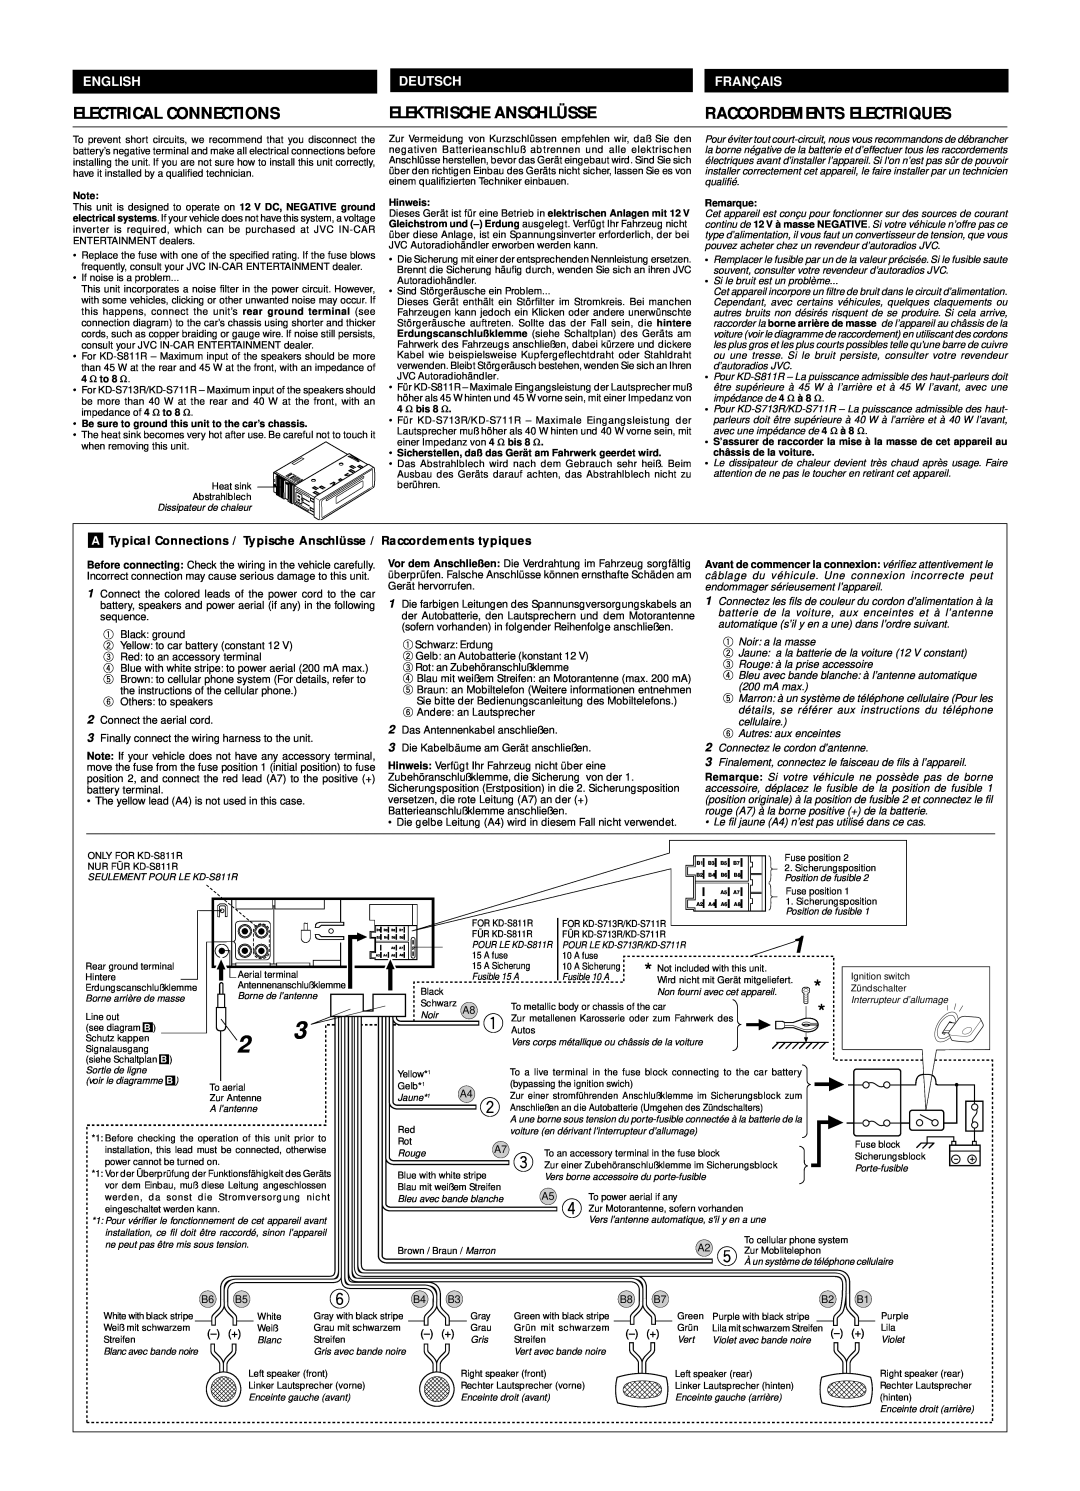 JVC KD-S711R manual Electrical Connections, Elektrische Anschlüsse, Franç Ais, Raccordements Electriques, English, Deutsch 